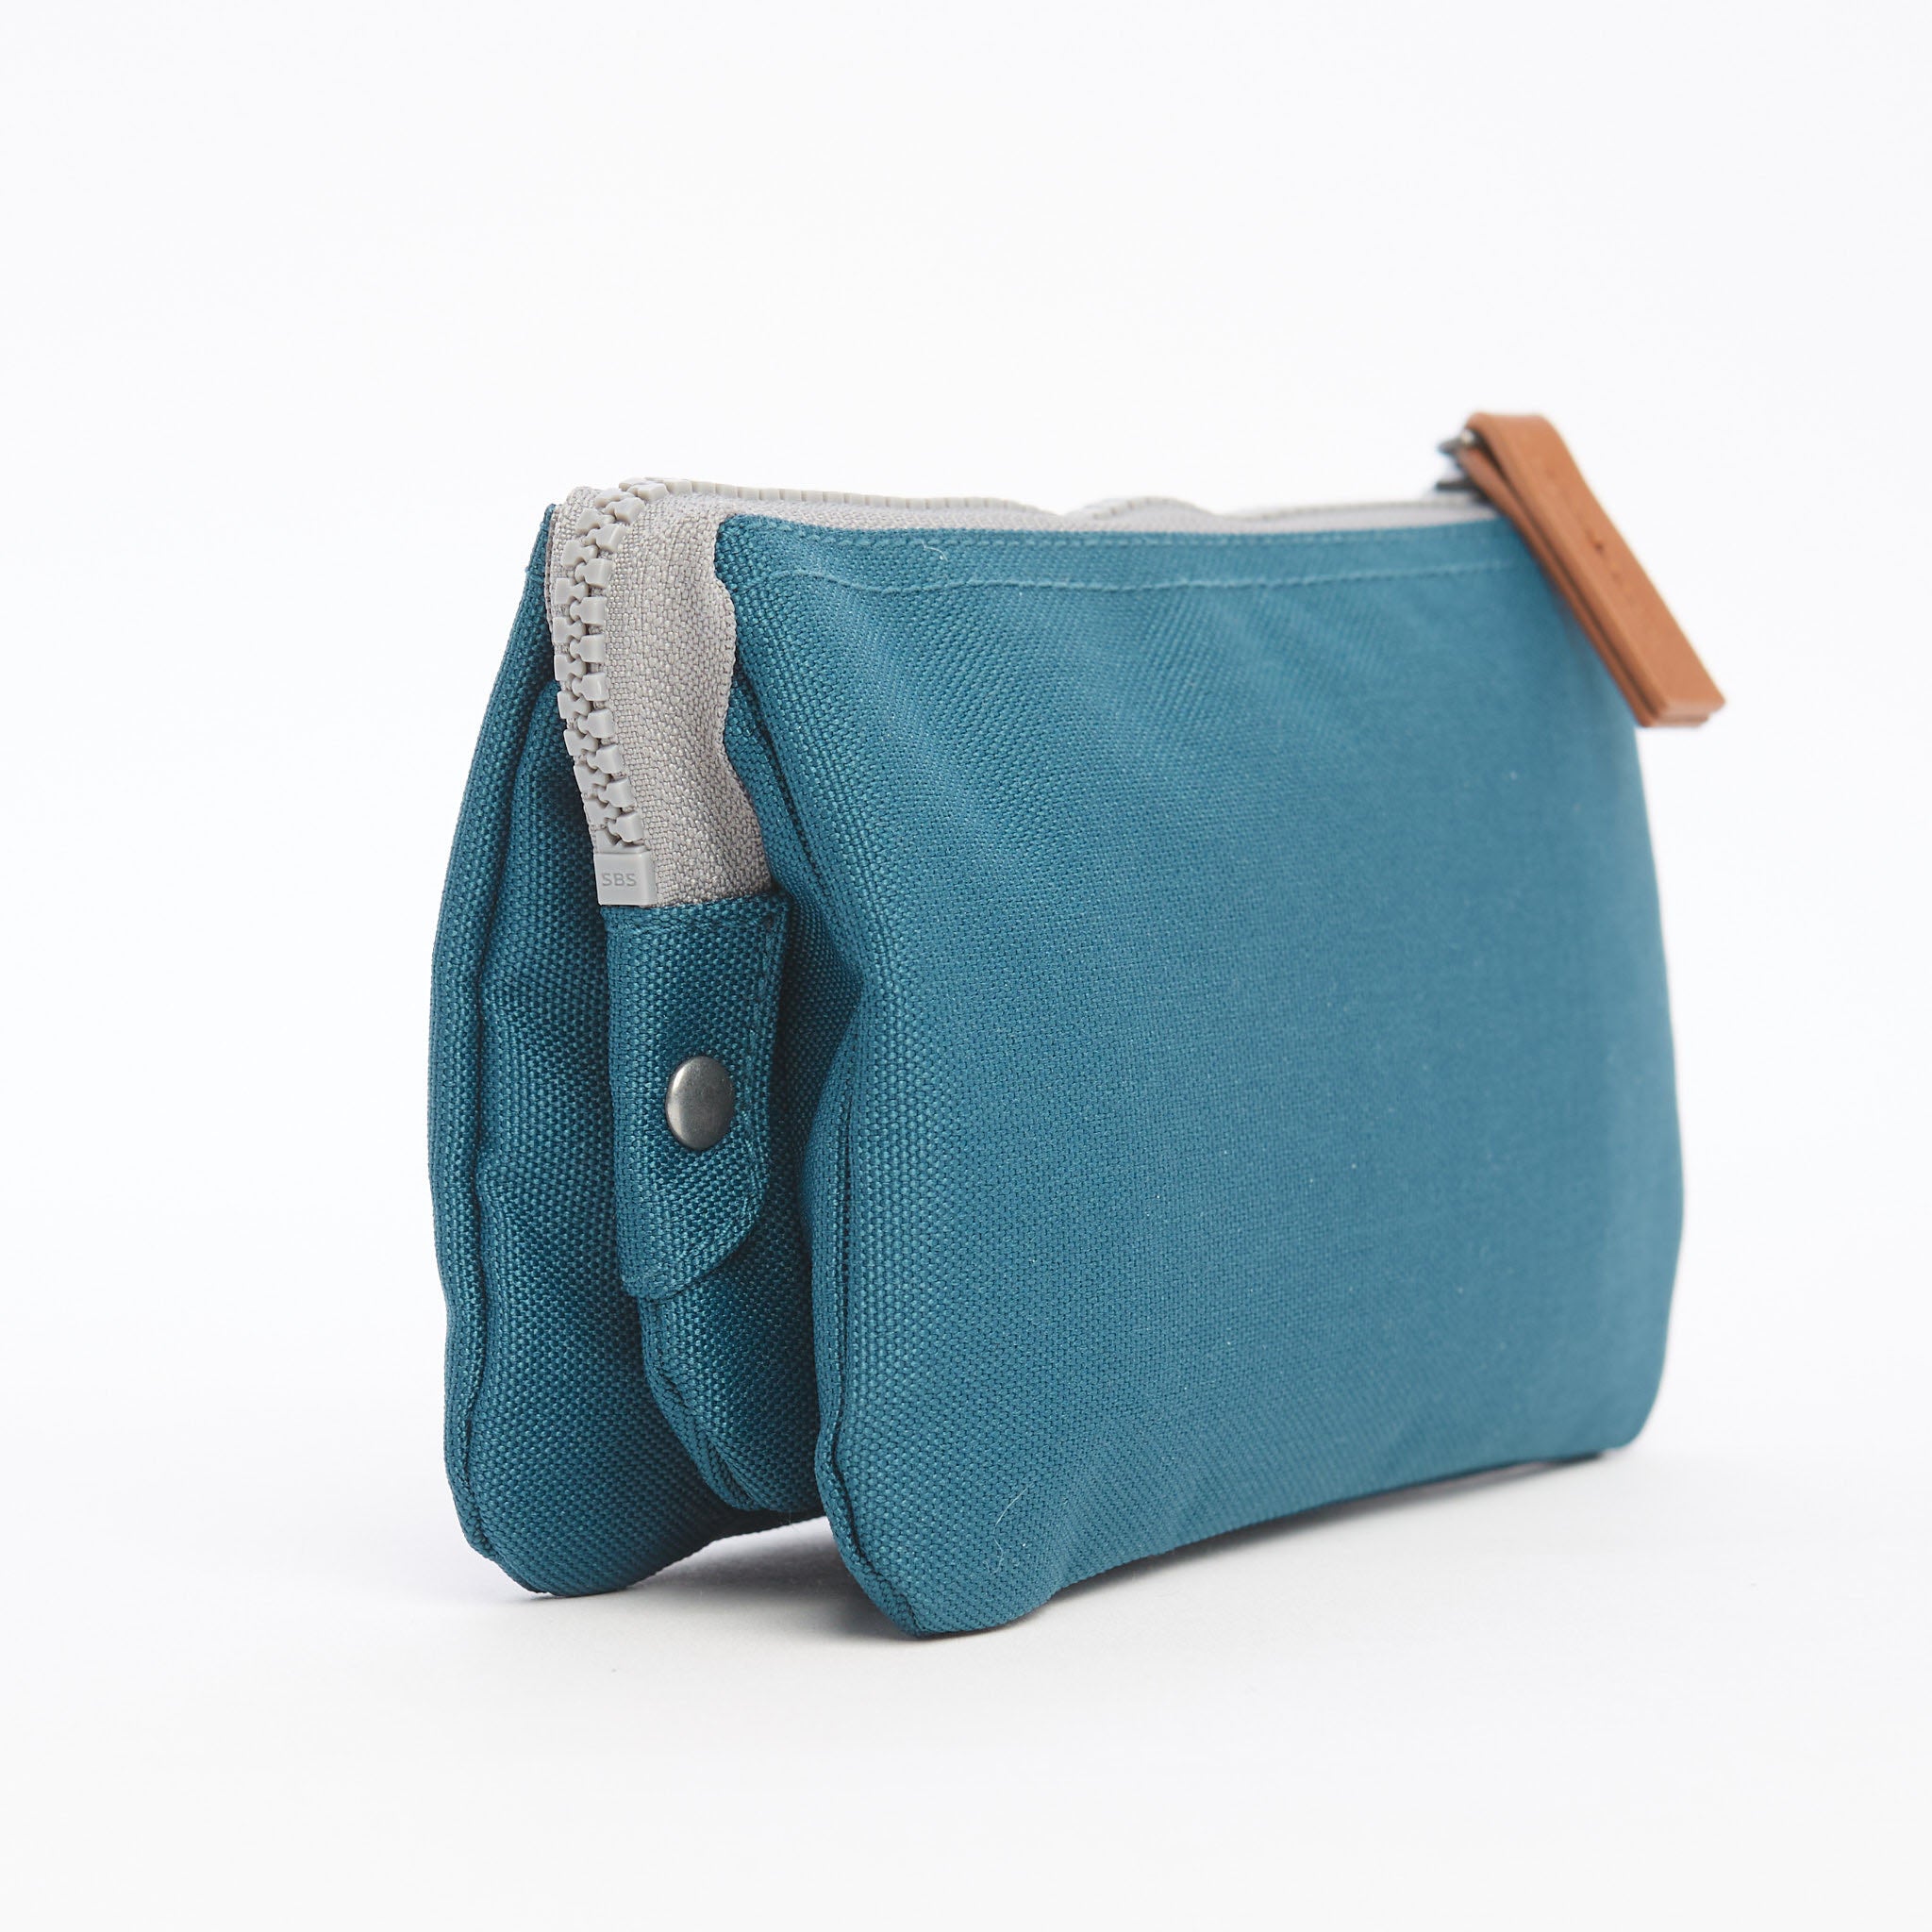 How to fix a sticky handbag zipper #fashionstylist #tipsandtricks #how... |  TikTok